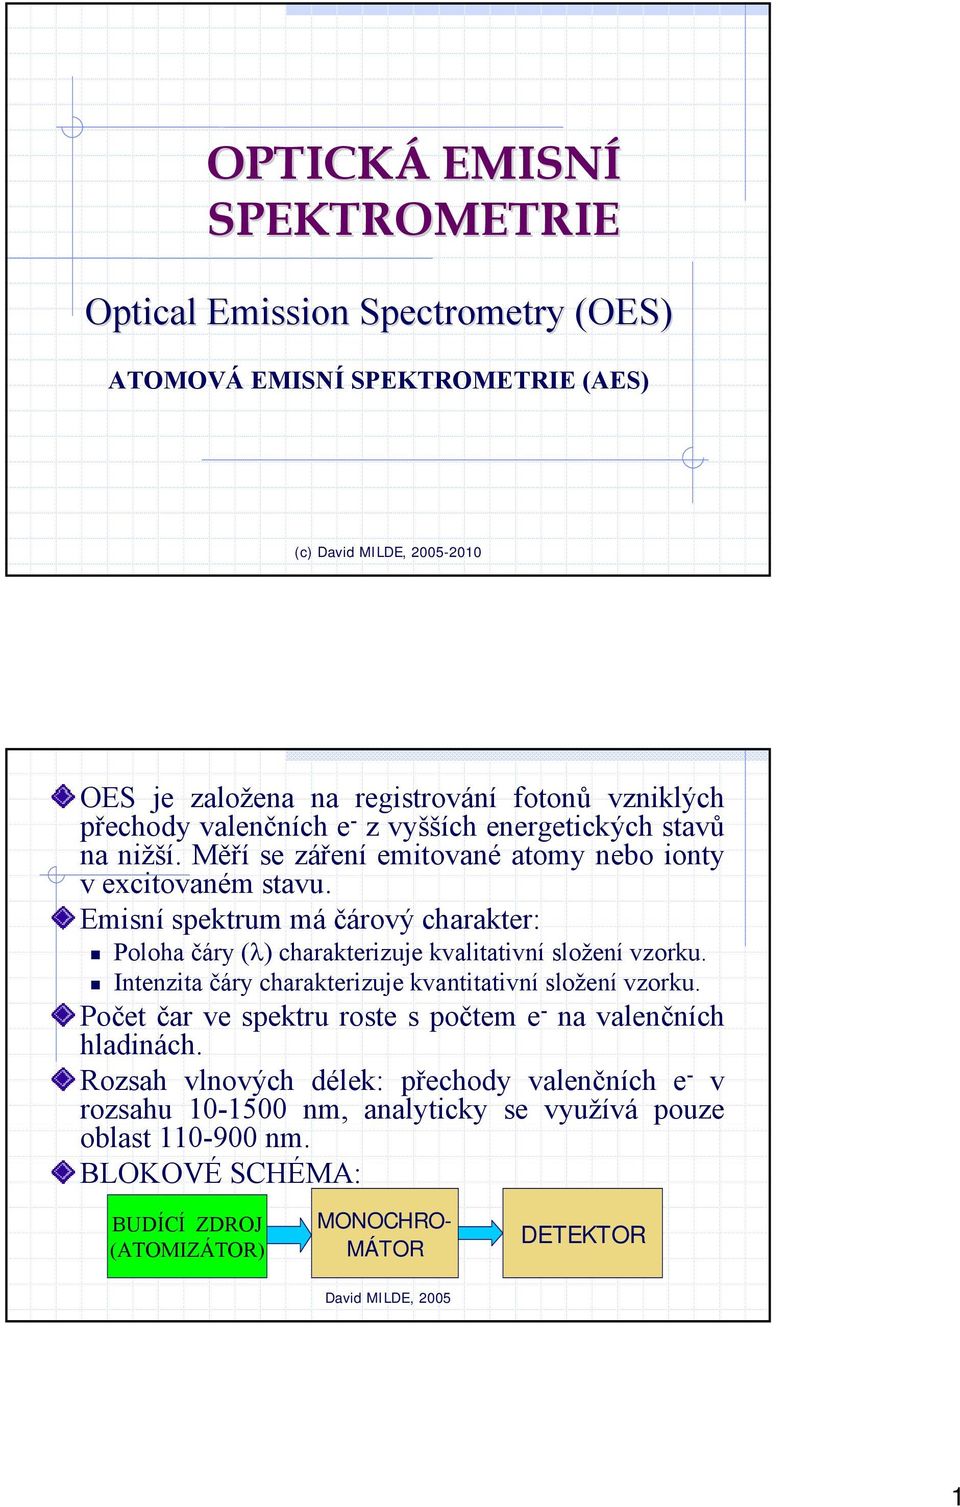 Emisní spektrum má čárový charakter: Poloha čáry (λ) charakterizuje kvalitativní složení vzorku. Intenzita čáry charakterizuje kvantitativní složení vzorku.